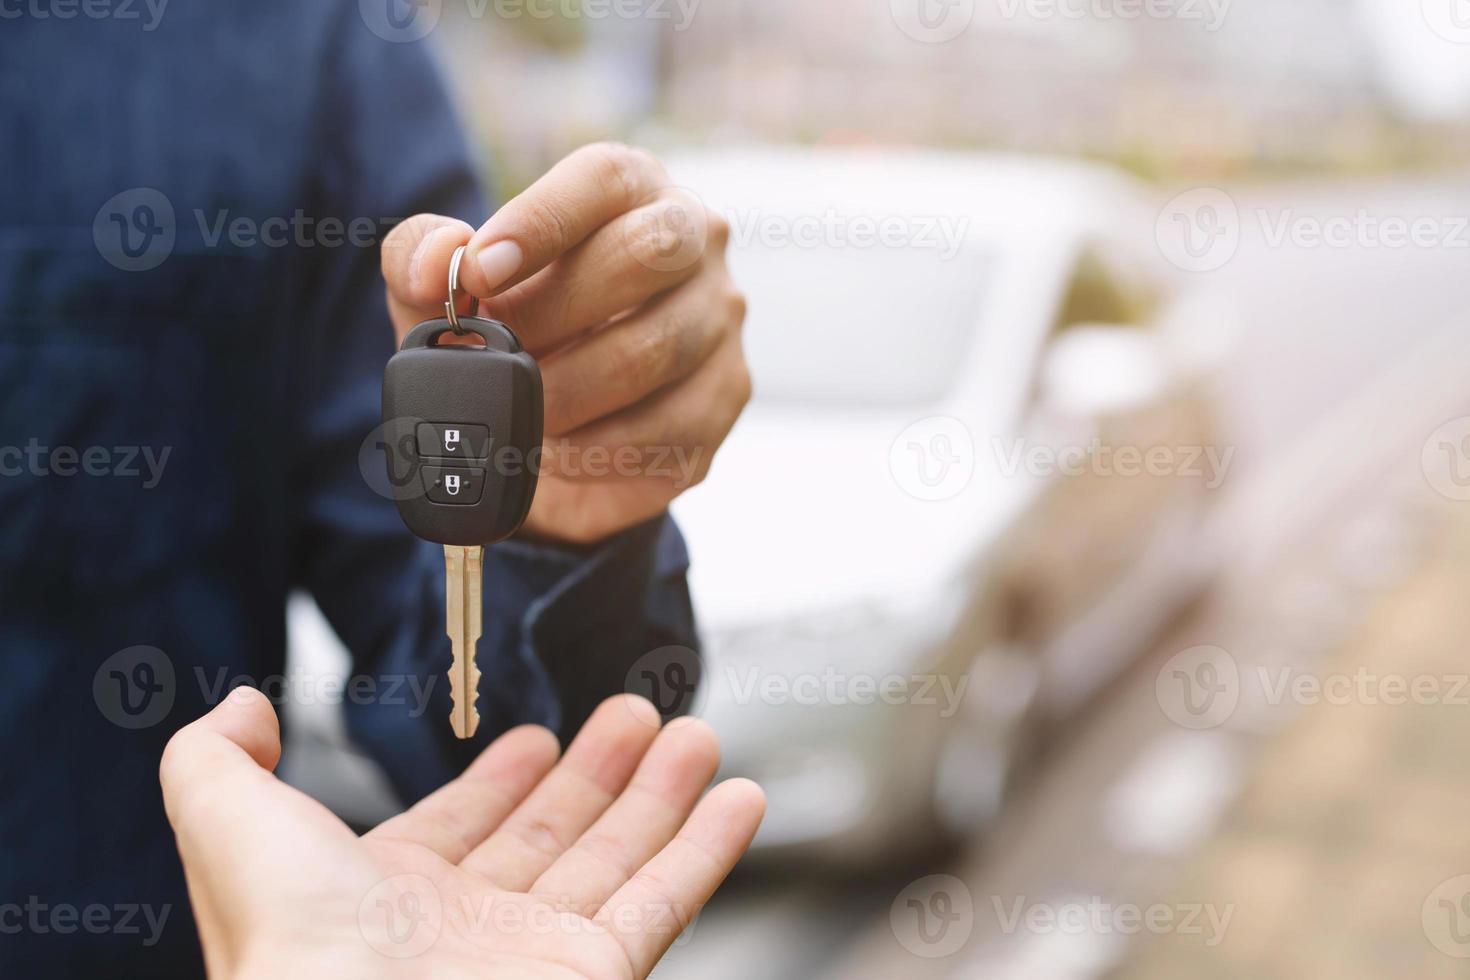 bilnyckel, affärsman som lämnar över ger bilnyckeln till den andra kvinnan på bilbakgrund. foto